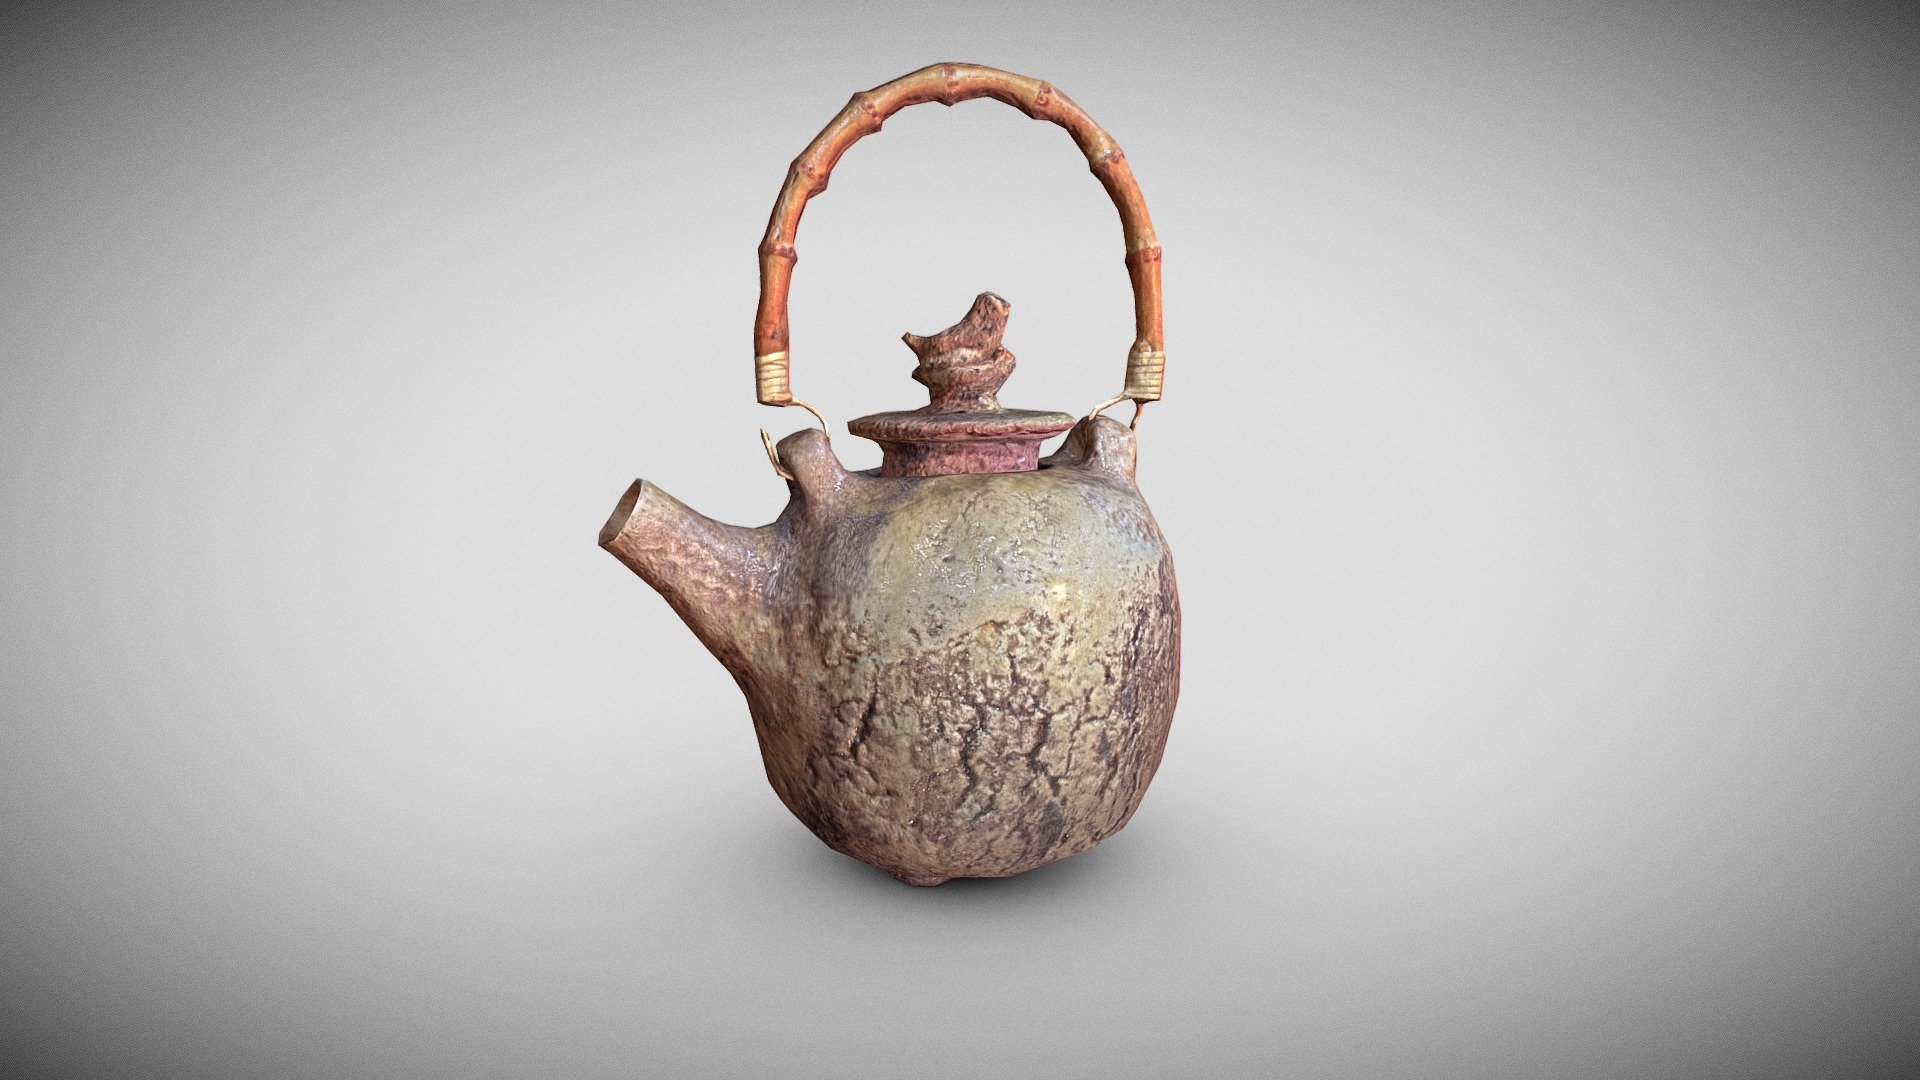 Tea Pot with a bamboo handle